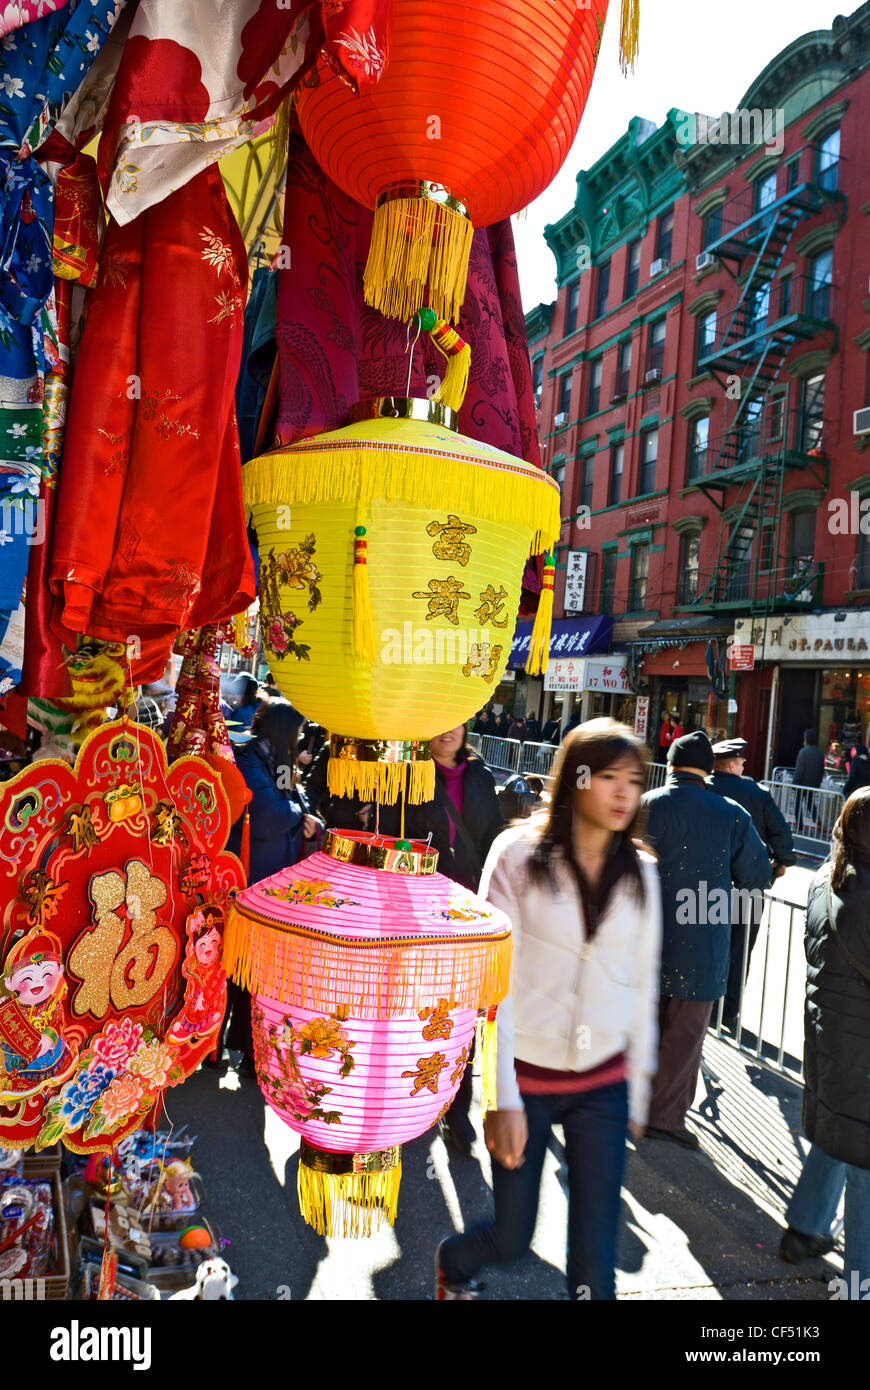 Magasin de souvenirs sur Mott Street dans le quartier chinois, la ville de New York, vend des lanternes chinoises. Banque D'Images